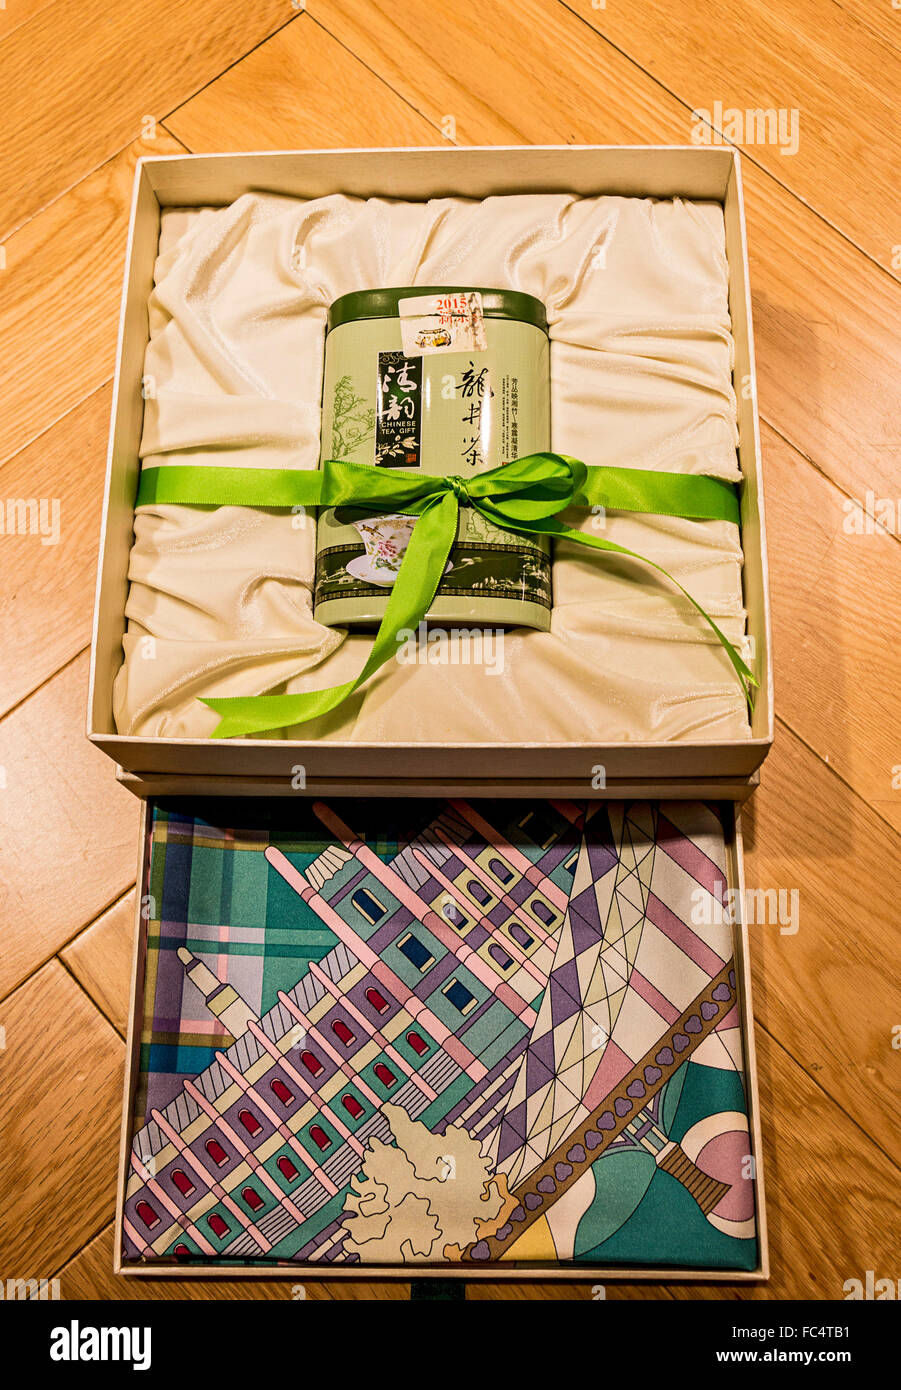 Boîte de thé vert sur un lit de soie avec un foulard de soie pour 225 $ US à Wensli Musée de la soie de Hangzhou, Chine. Banque D'Images